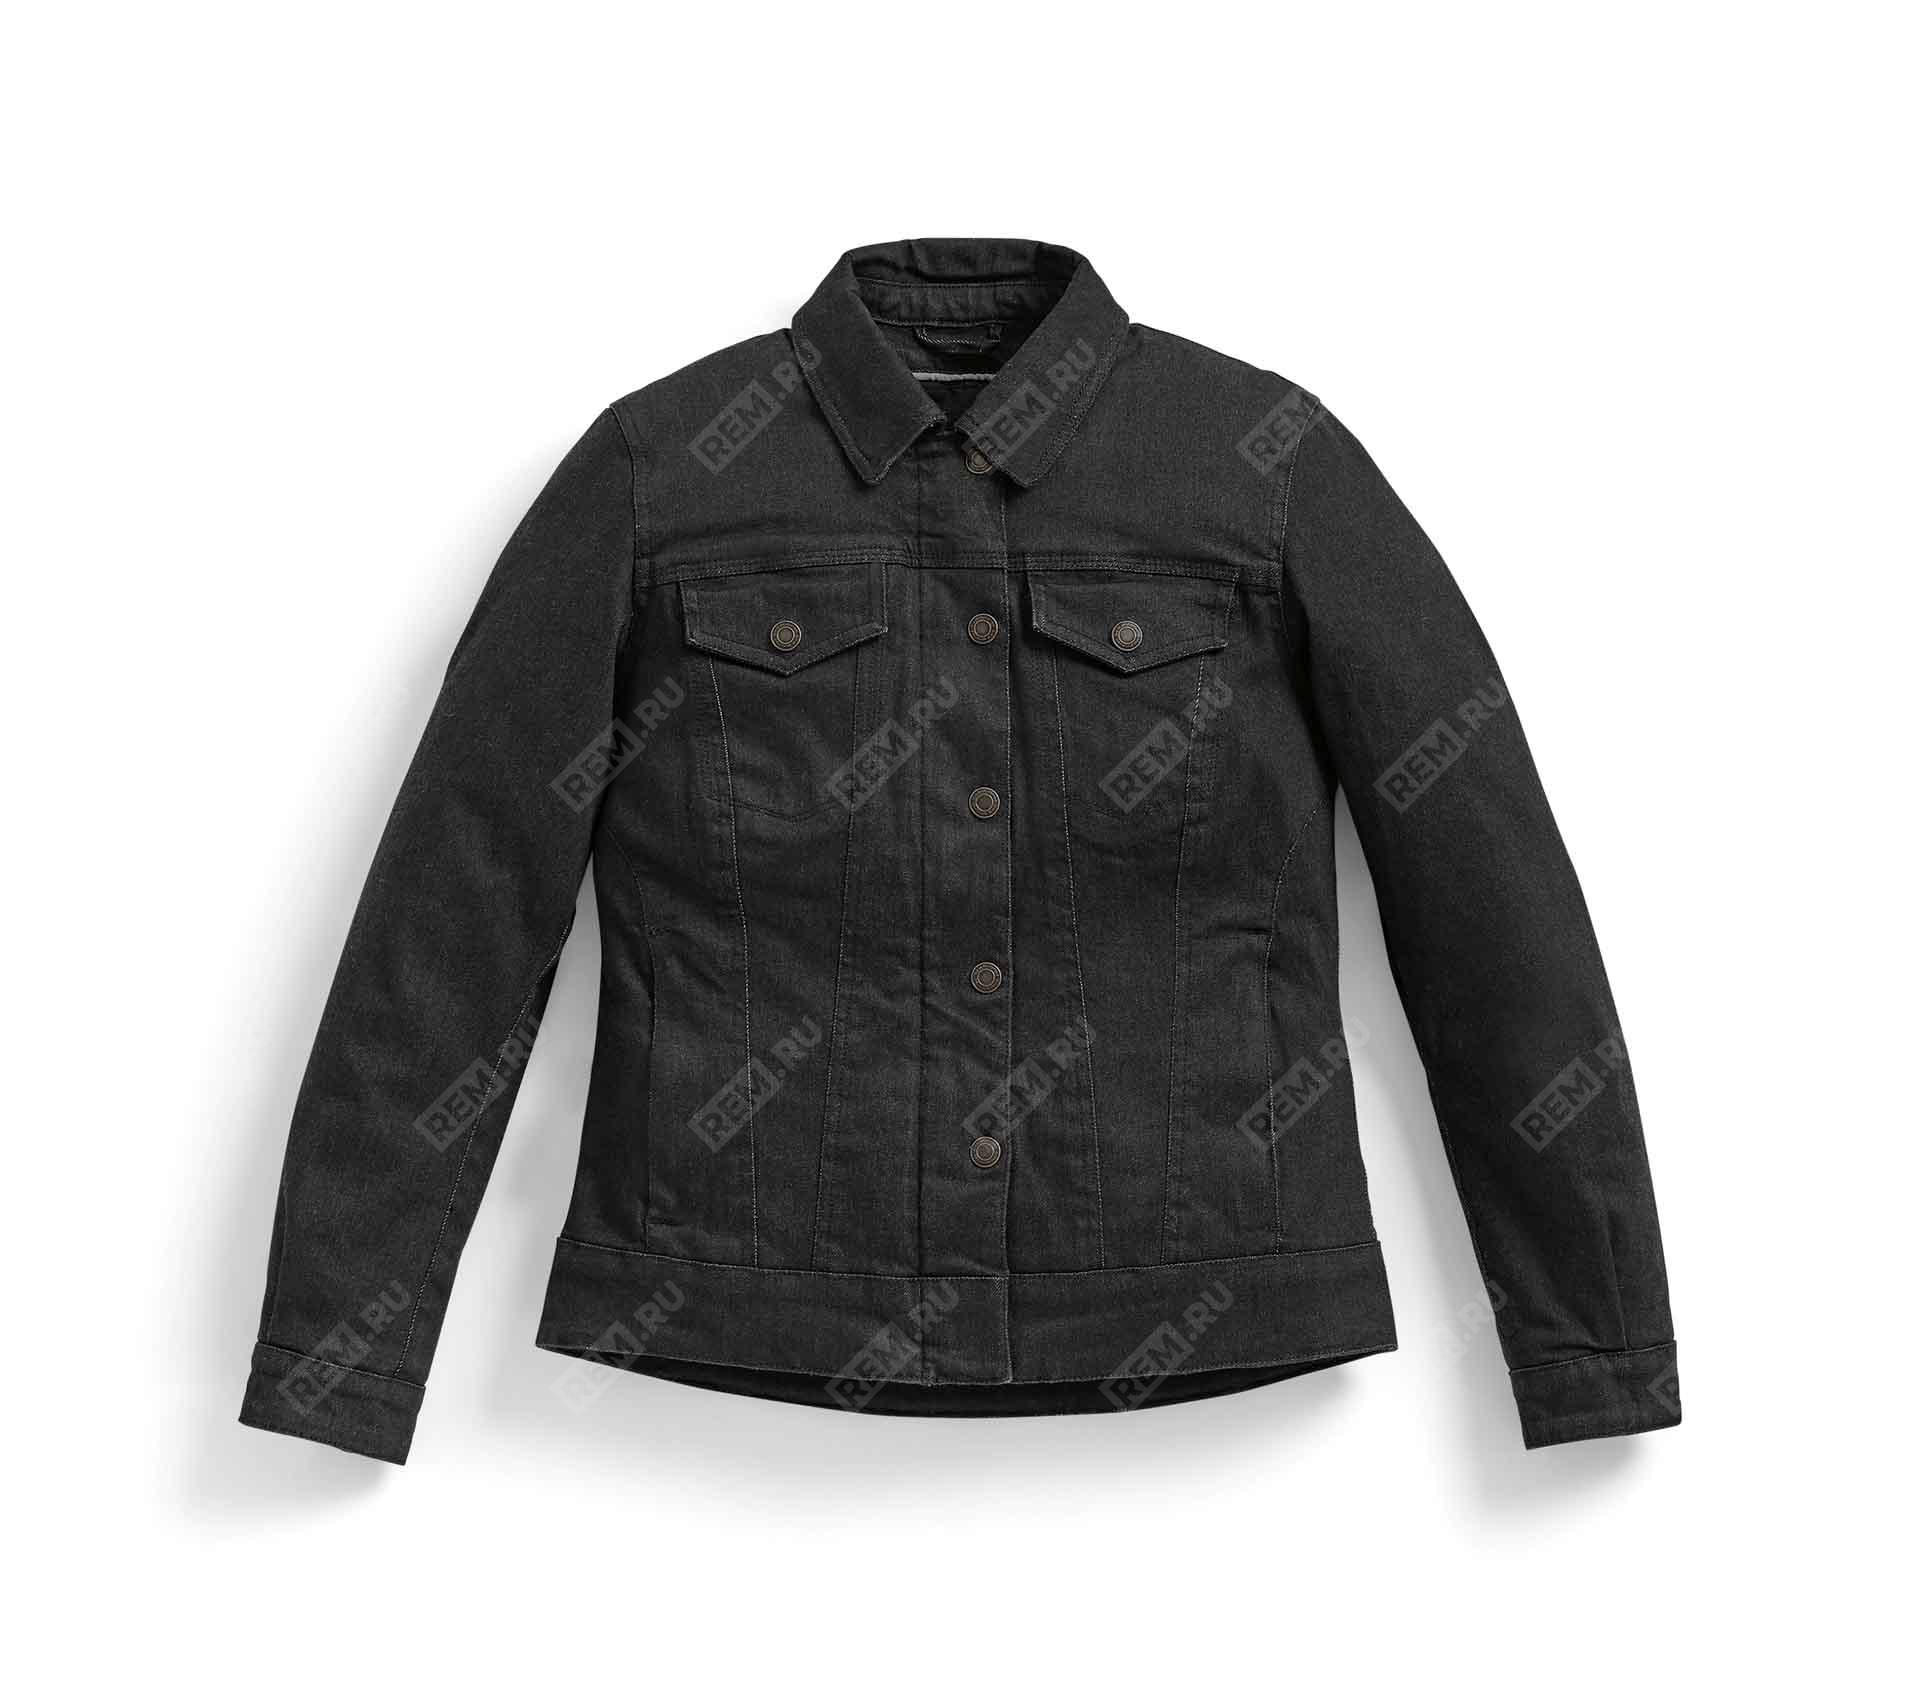  76131539848  куртка женская джинсовая roadcrafted черная, размер xl  (фото 1)